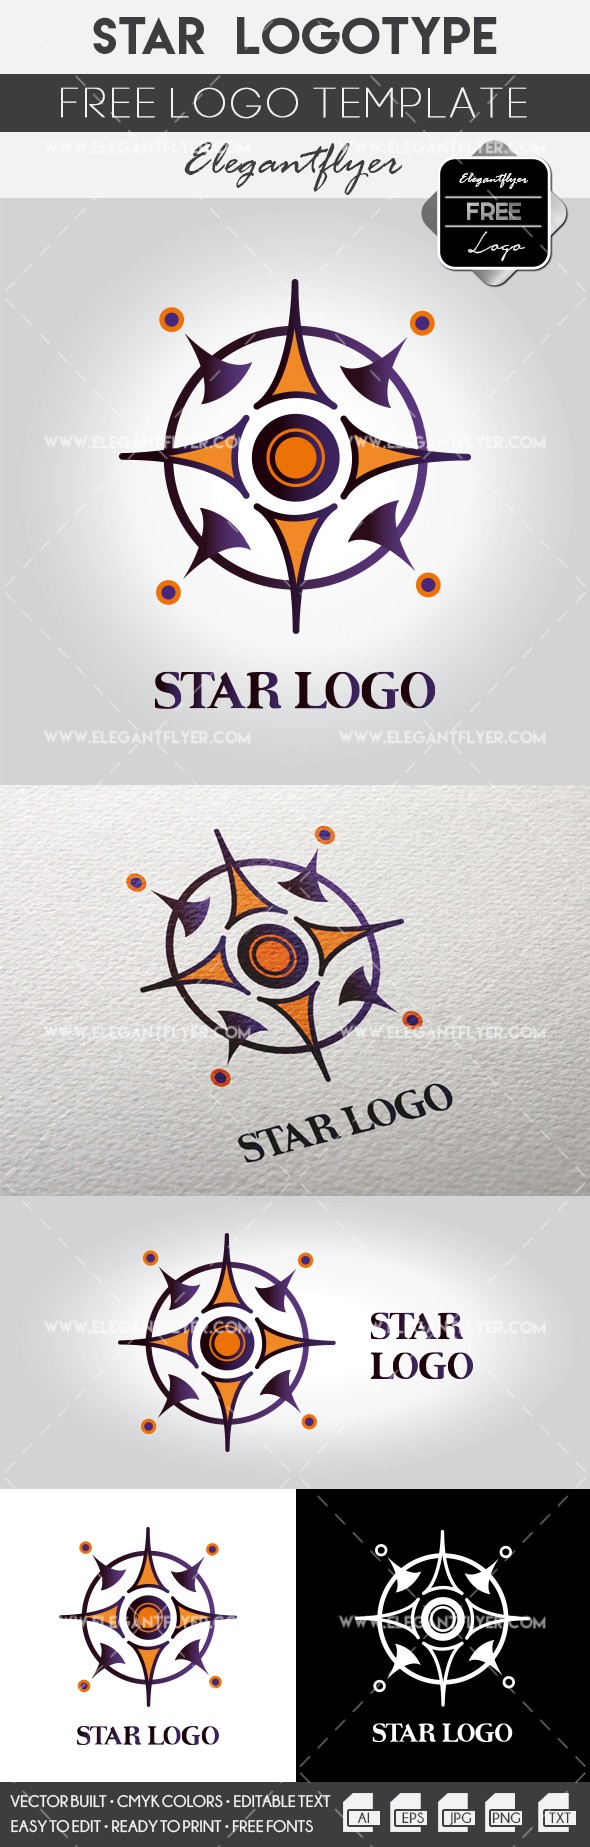 Star logo by ElegantFlyer